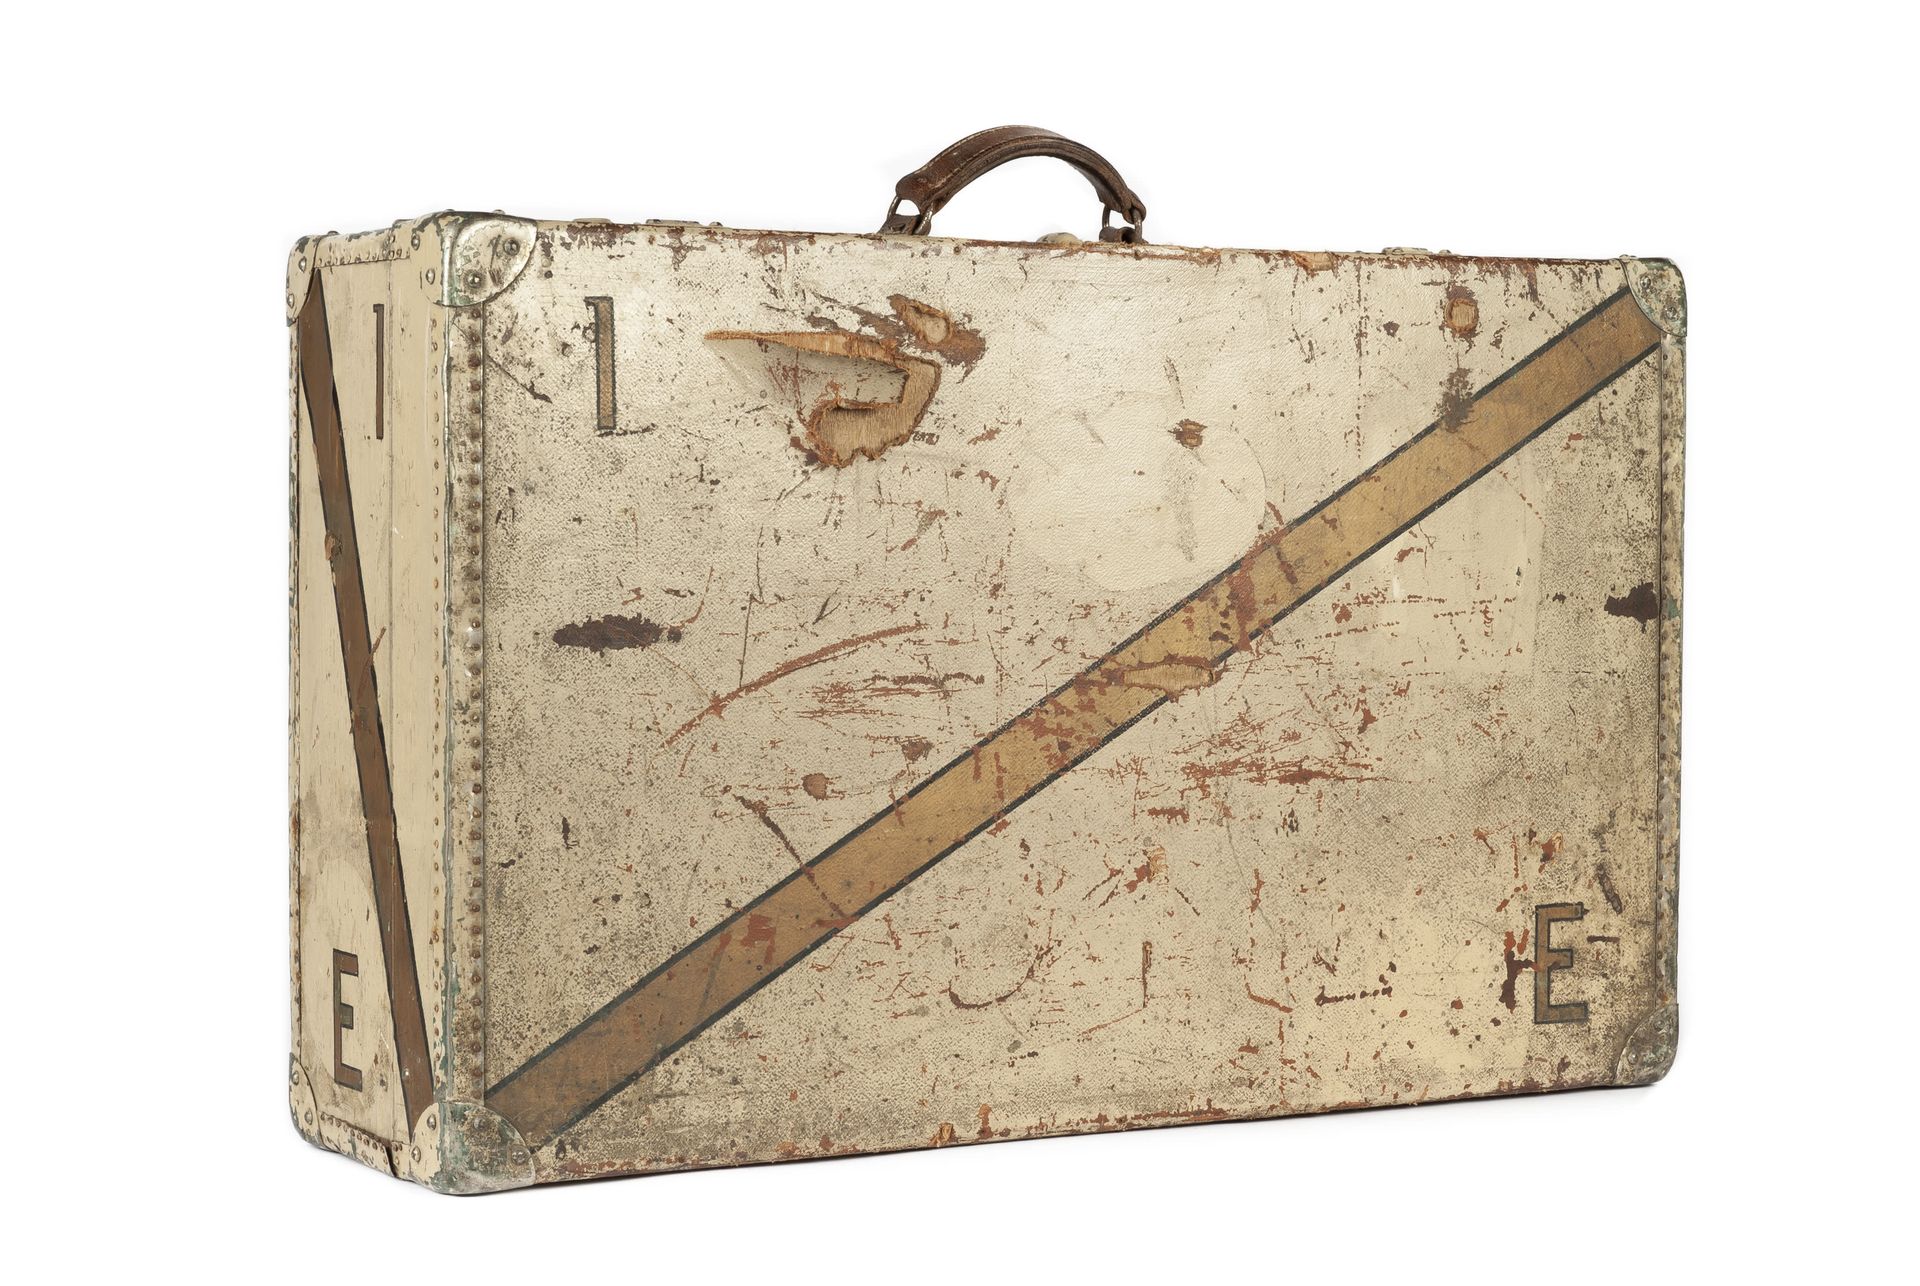 LOUIS VUITTON 年代的手提箱，帆布涂有黄色游轮的颜色，有原来的标记1 E，皮革手柄，四角有金属加固钉，帆布内部有带子（acc.
68 x 42 x &hellip;